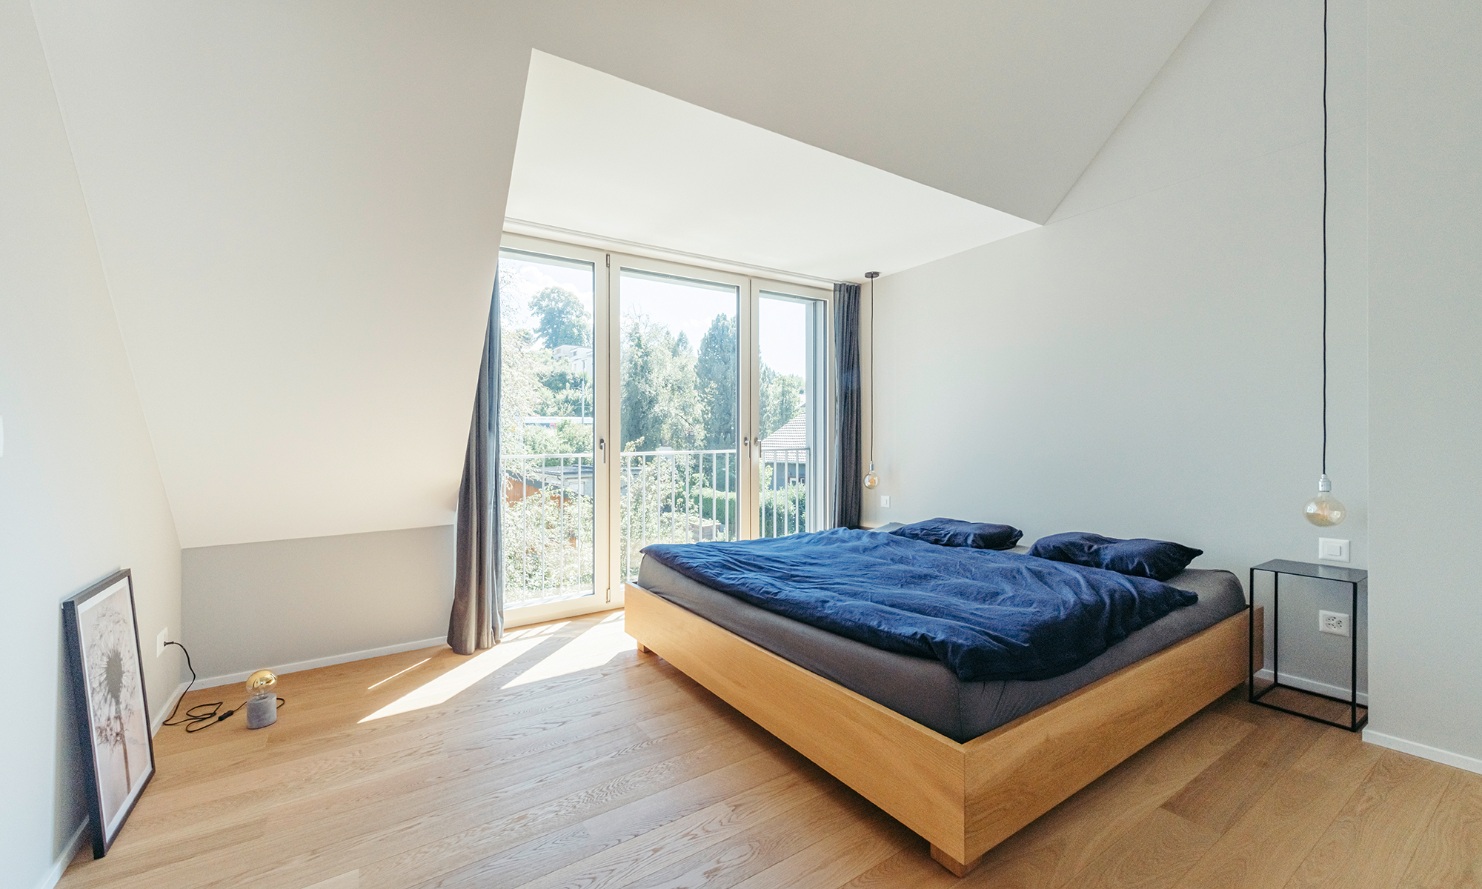 Helles Schlafzimmer mit Doppelbett und Parkett-Fussboden im aufgestockten Einfamilienhaus